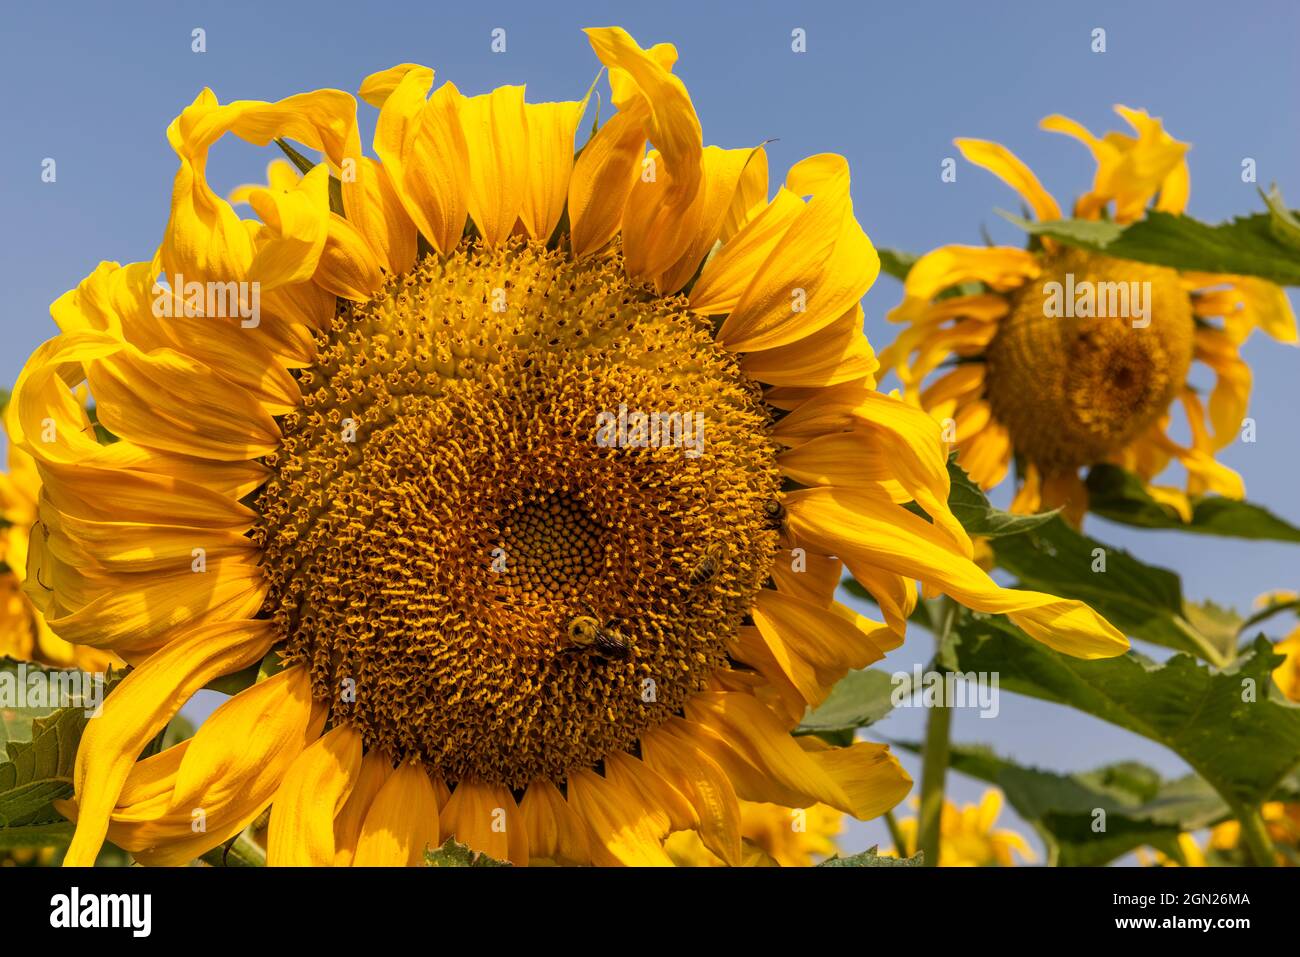 Bee on sunflower Stock Photo